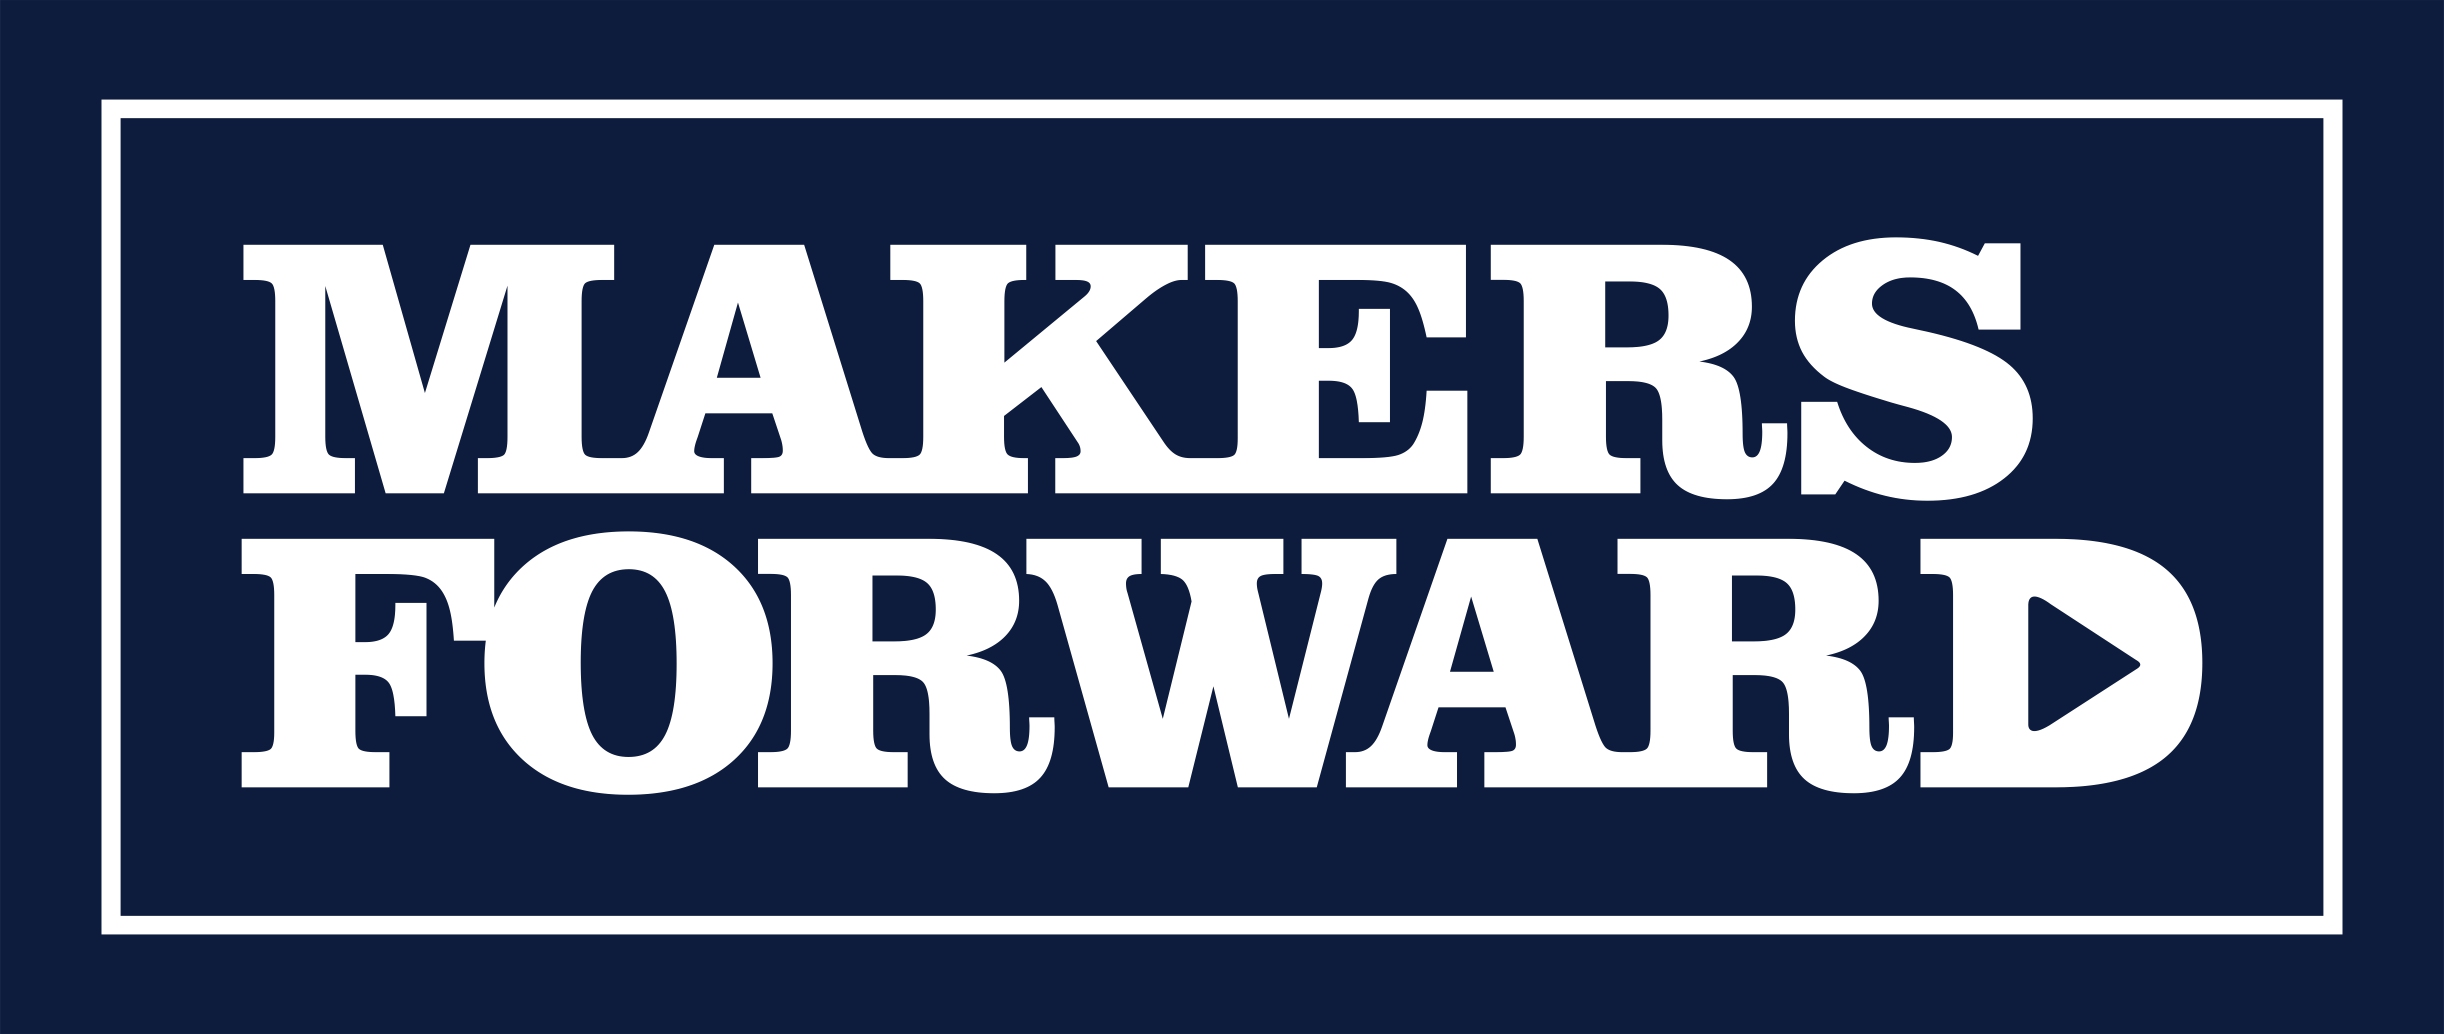 MAKERS LLC - Makers